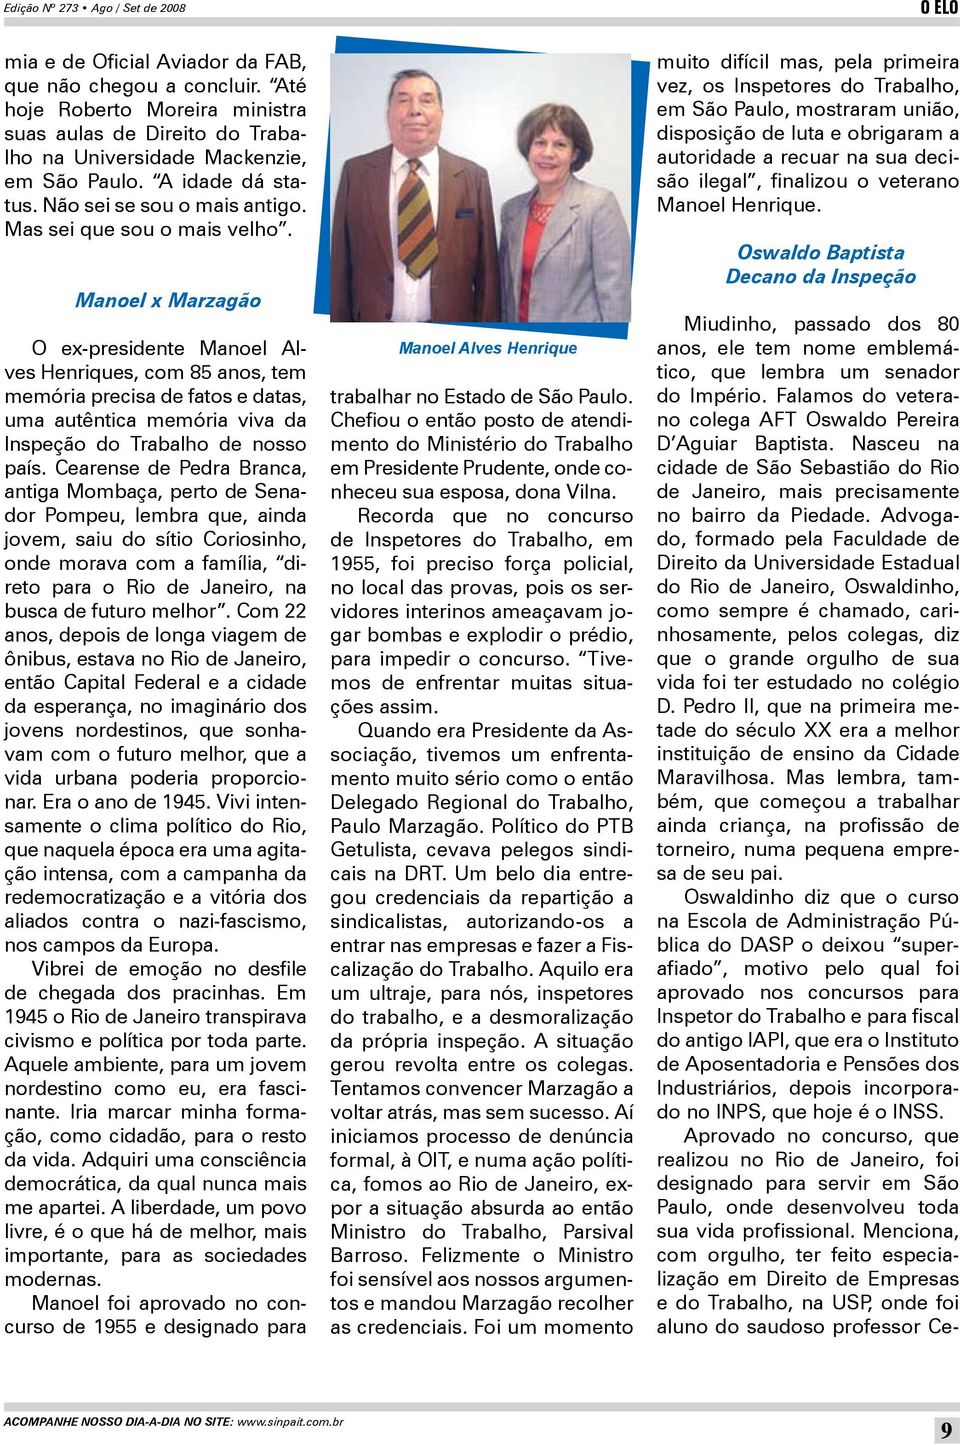 Manoel x Marzagão O ex-presidente Manoel Alves Henriques, com 85 anos, tem memória precisa de fatos e datas, uma autêntica memória viva da Inspeção do Trabalho de nosso país.